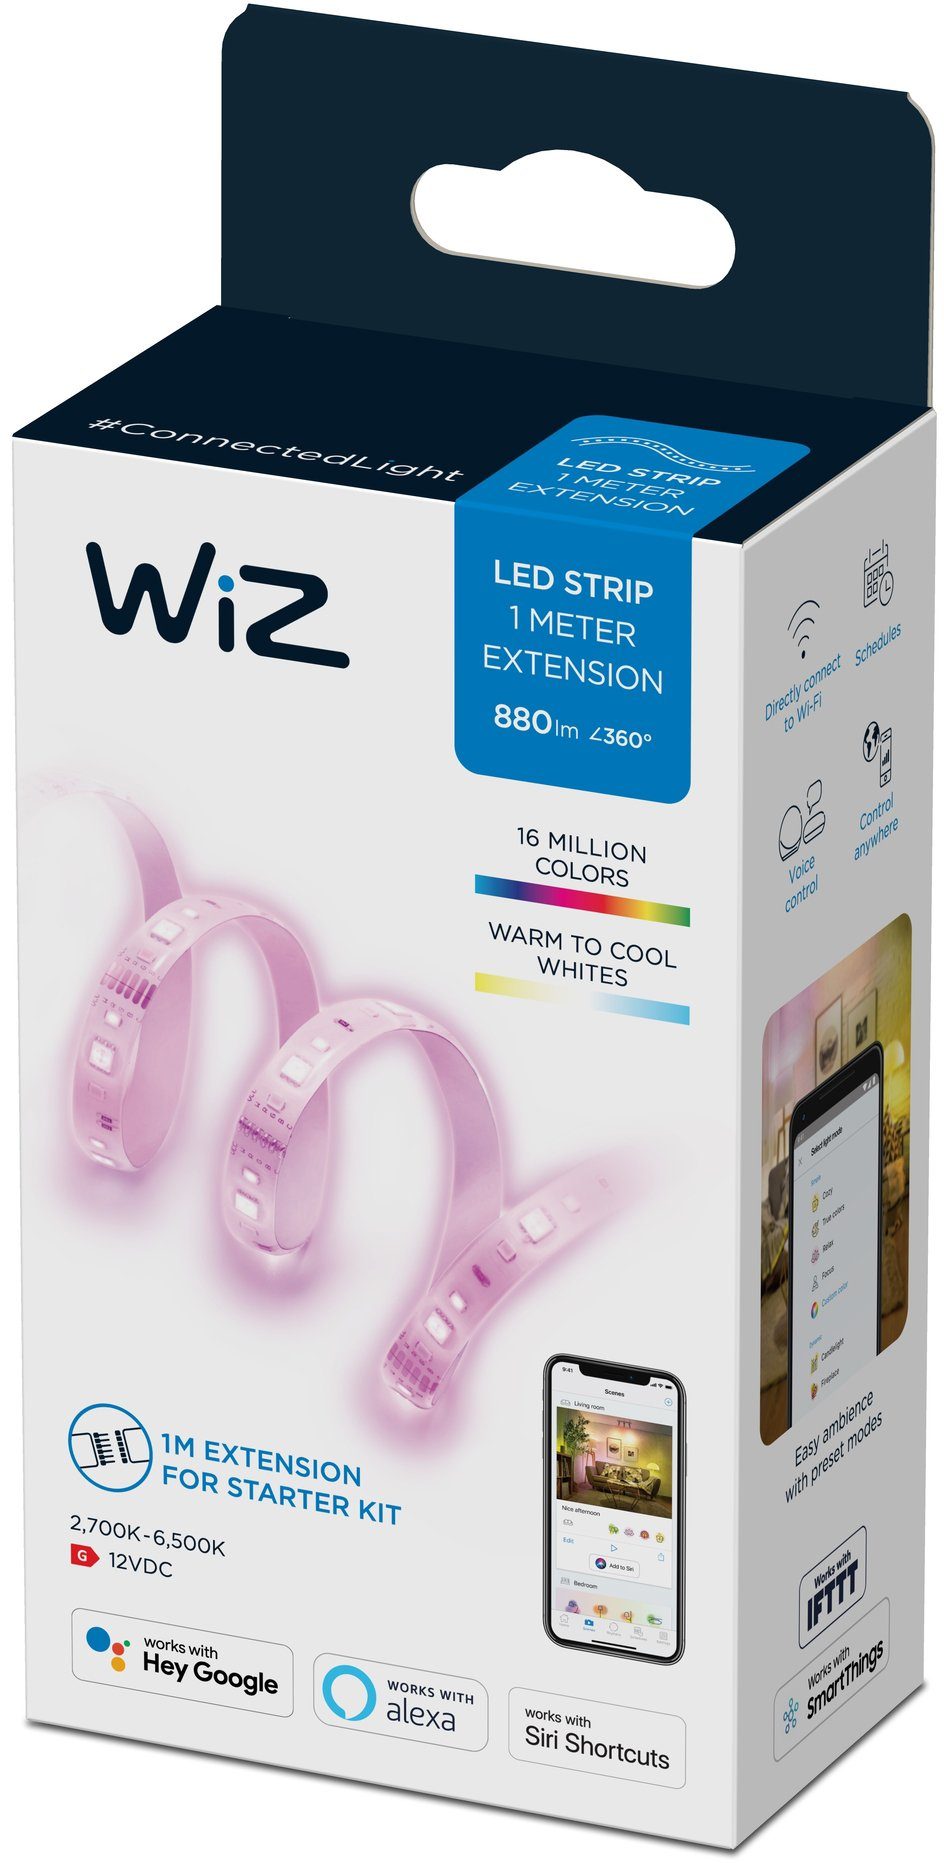 WiZ LED Stripe White&Color Lightstrip 1m Extension 880lm Einzelpack, vielfältiges und flexibles Lichterlebnis für Ihr Zuhause